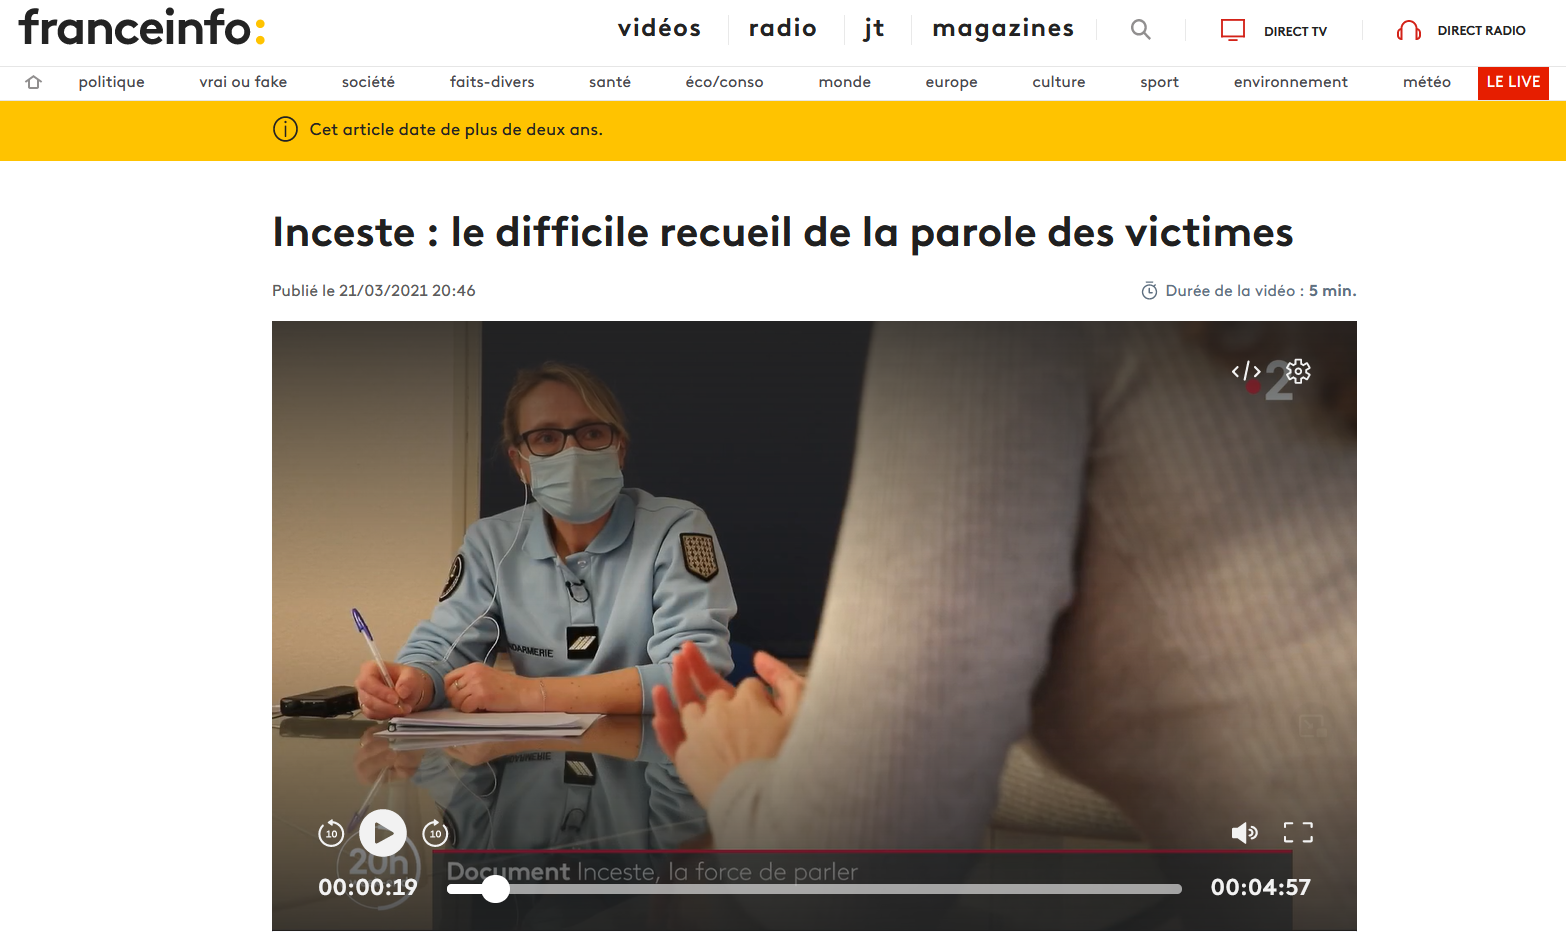 France info - Inceste : le difficile recueil de la parole des victimes